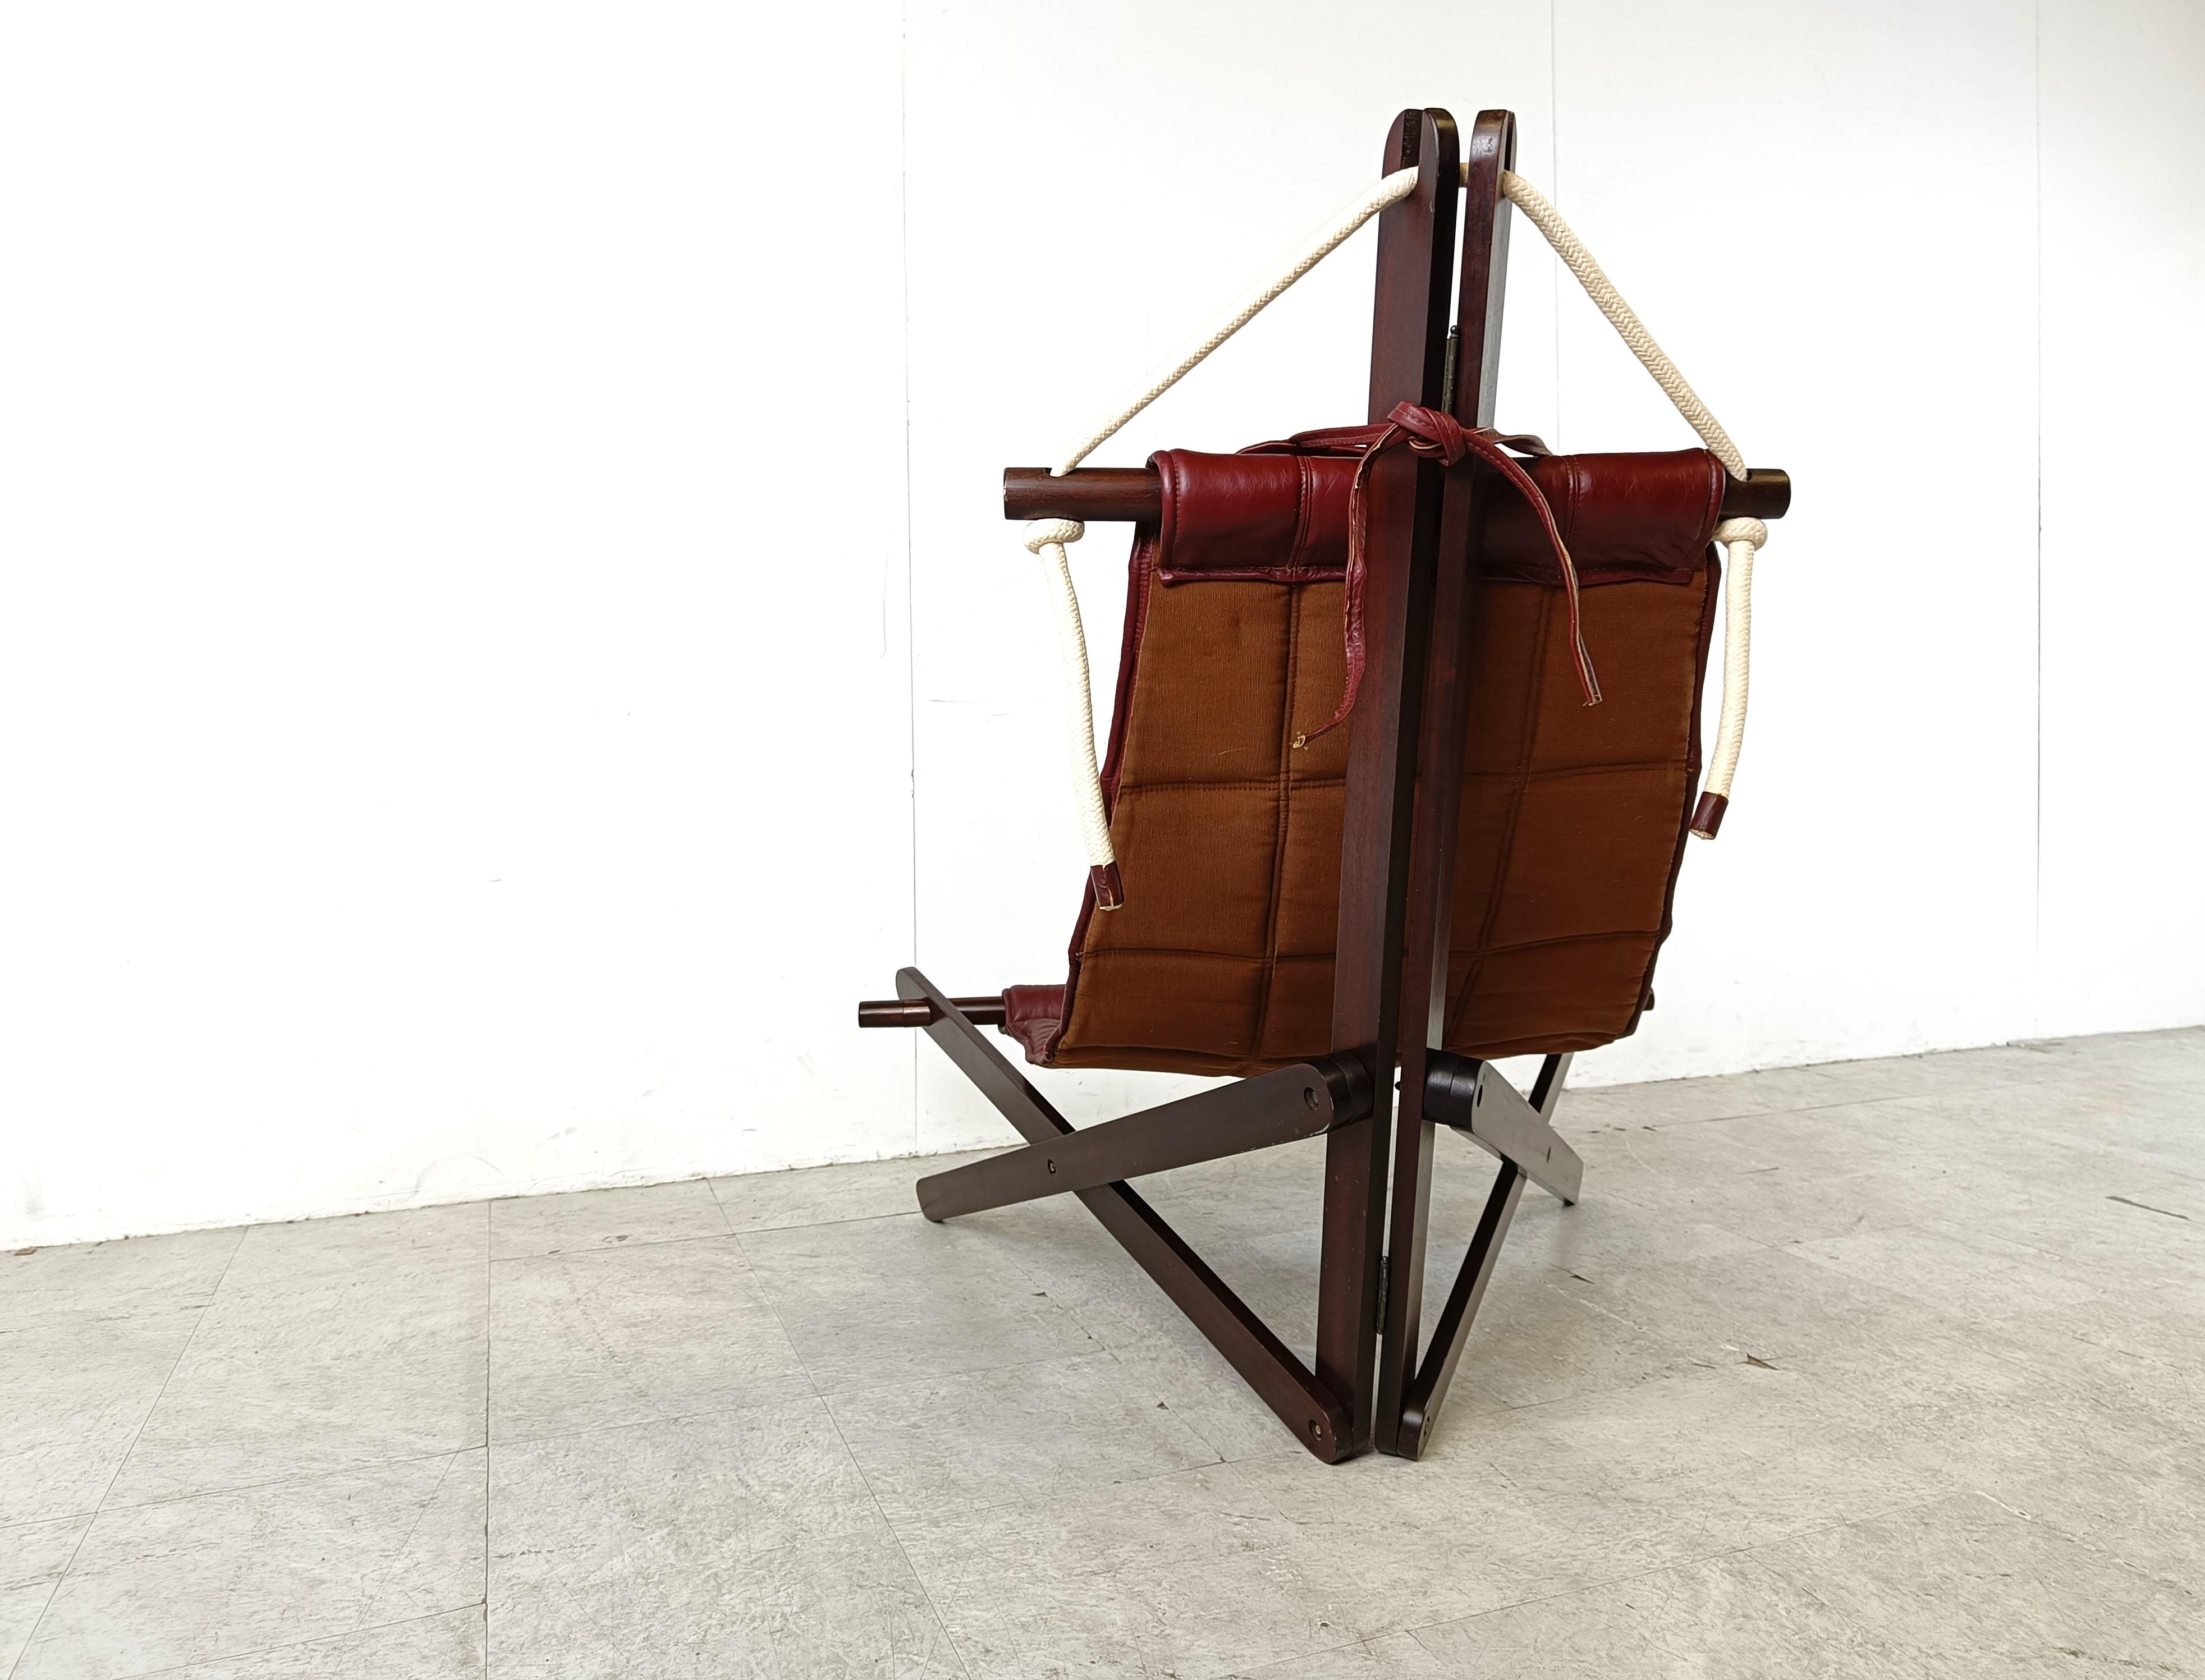 Chaise longue de collection conçue par Dominic Michaelis pour Moveis Corde, composée d'une structure sculpturale en bois et d'une assise en cuir rouge fixée par des cordons.

Le design d'inspiration maritime représente une voile avec une armature et